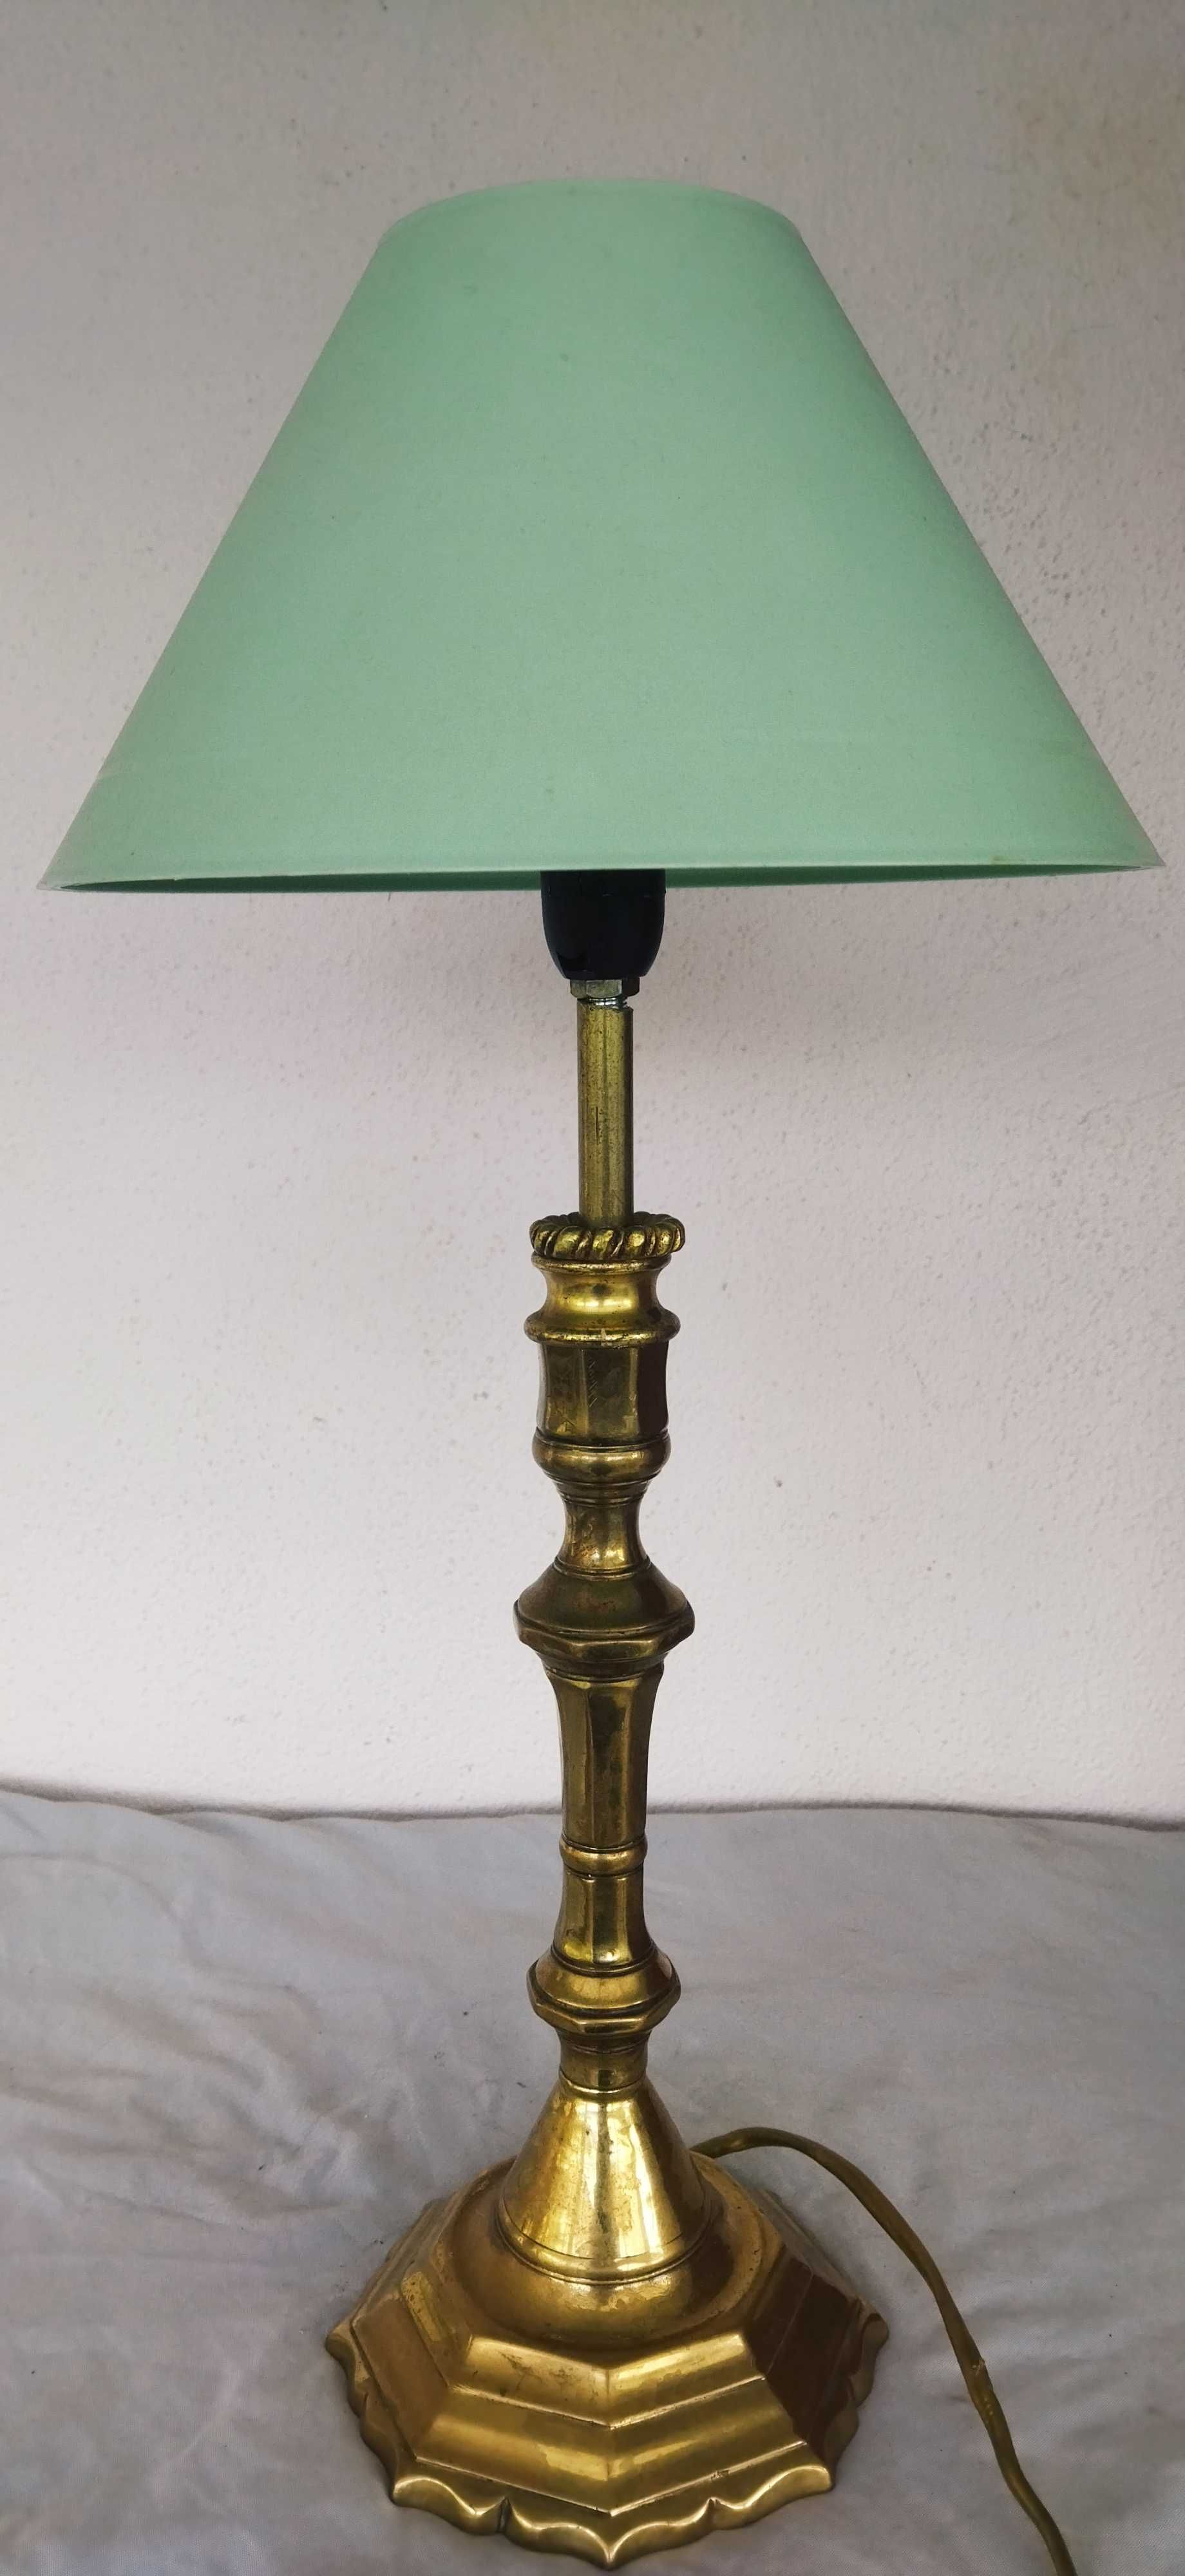 Лампа бронзовая,настольная.Зеленый абажур.50×22 см.Франция